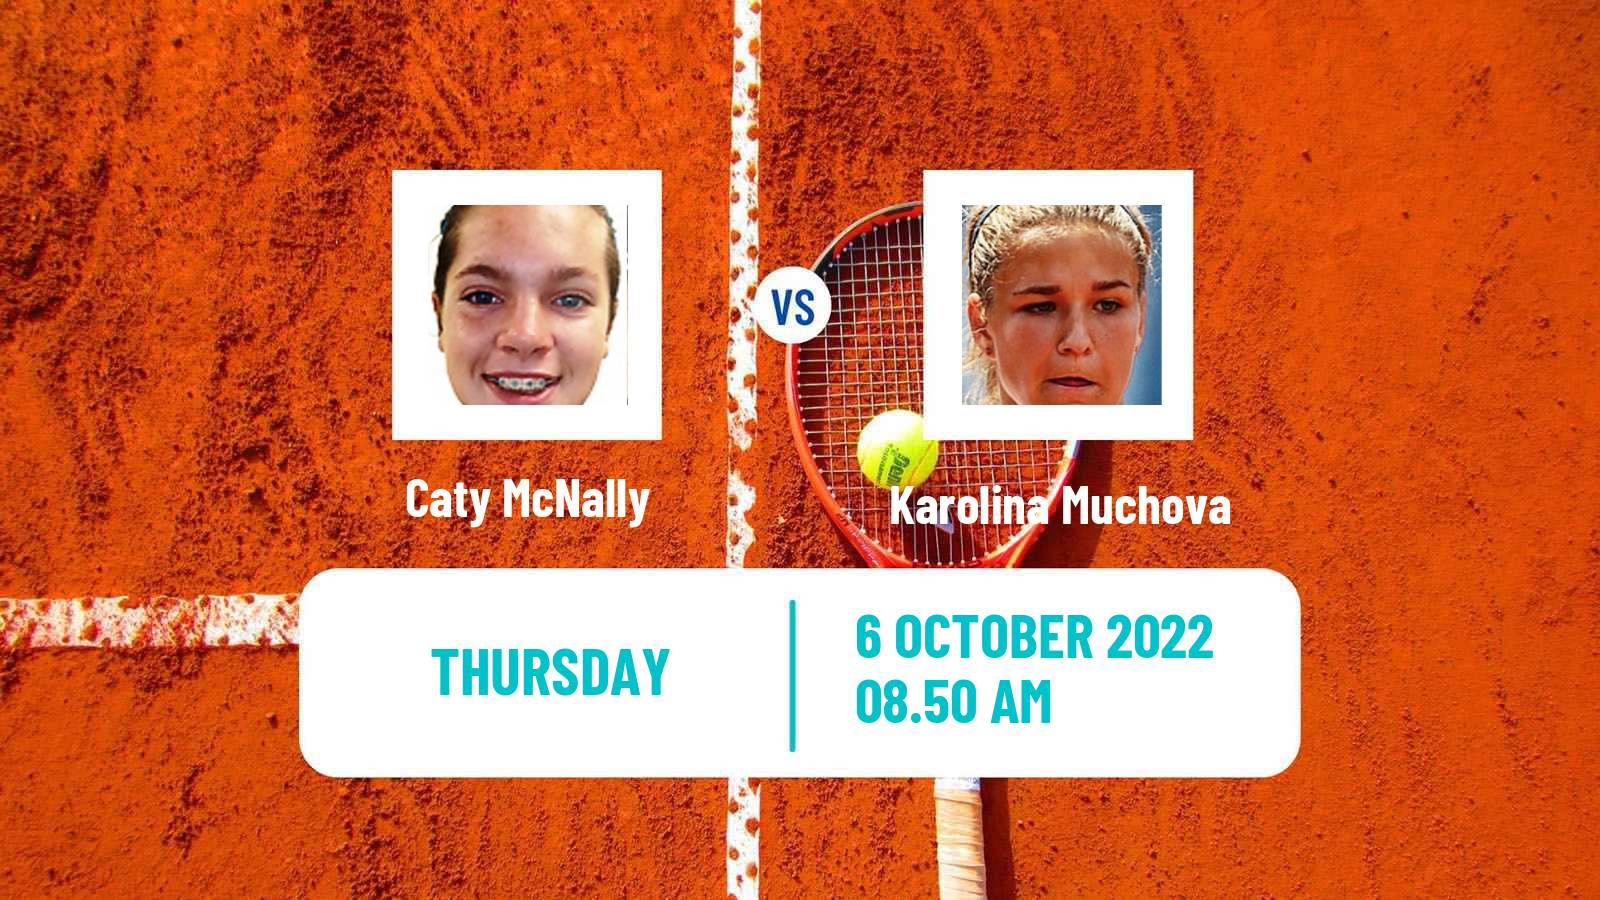 Tennis WTA Ostrava Caty McNally - Karolina Muchova